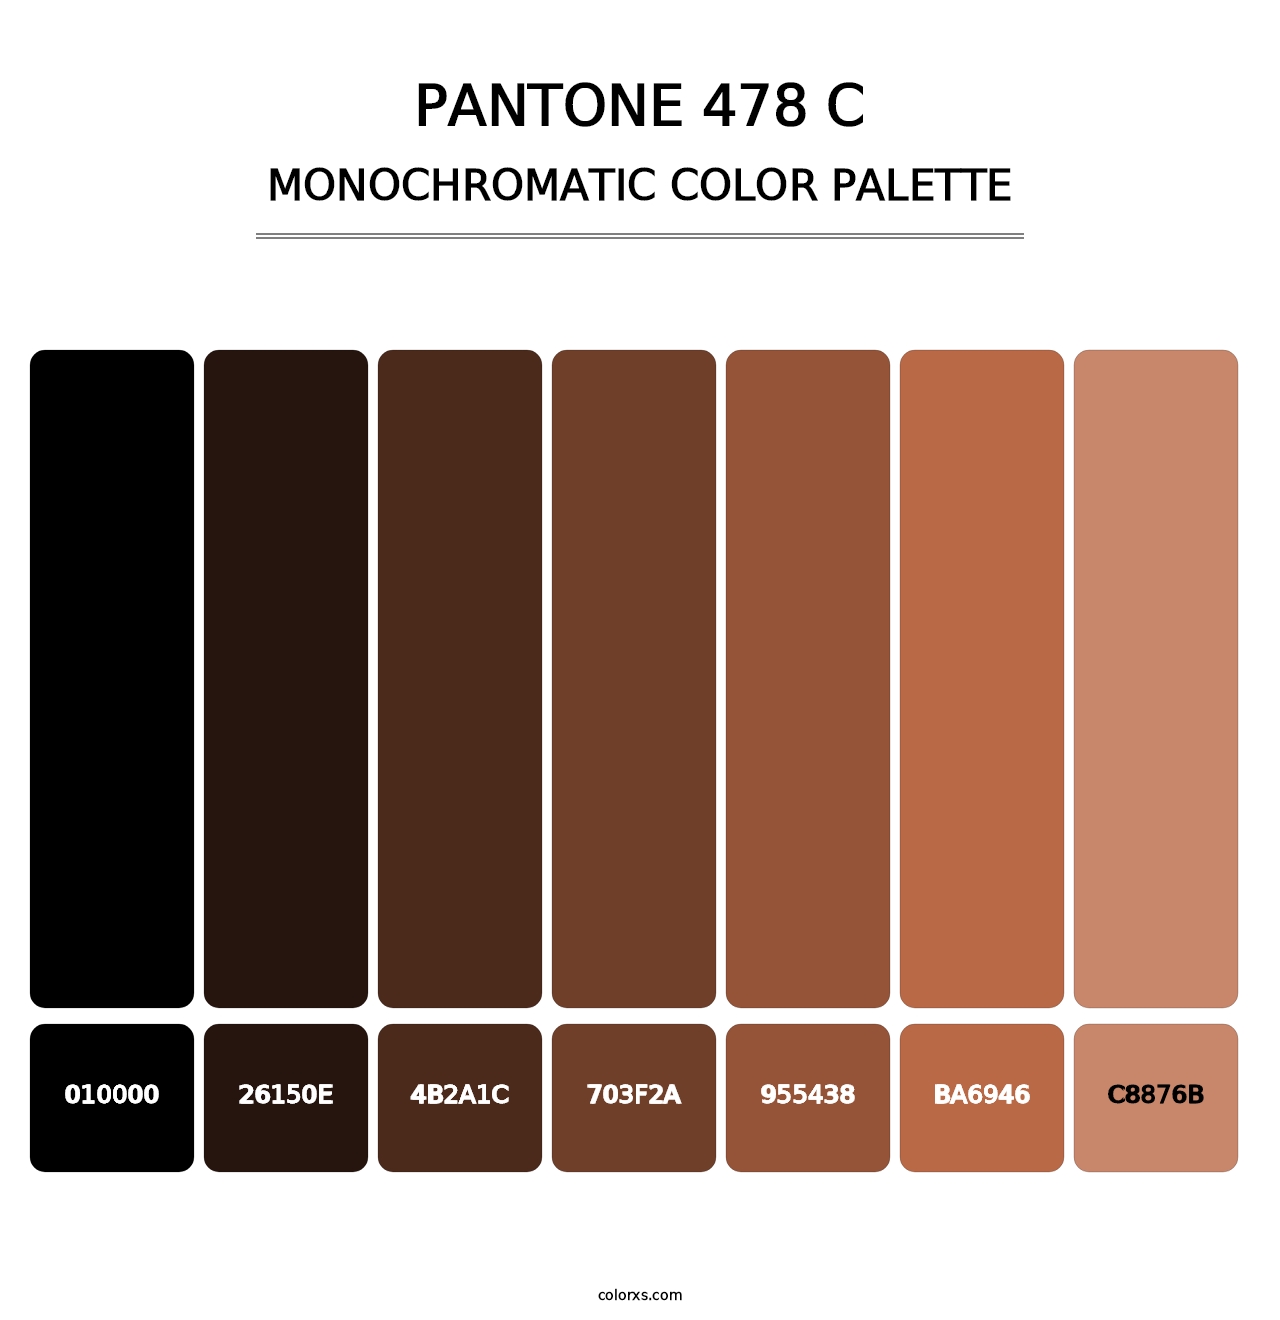 PANTONE 478 C - Monochromatic Color Palette